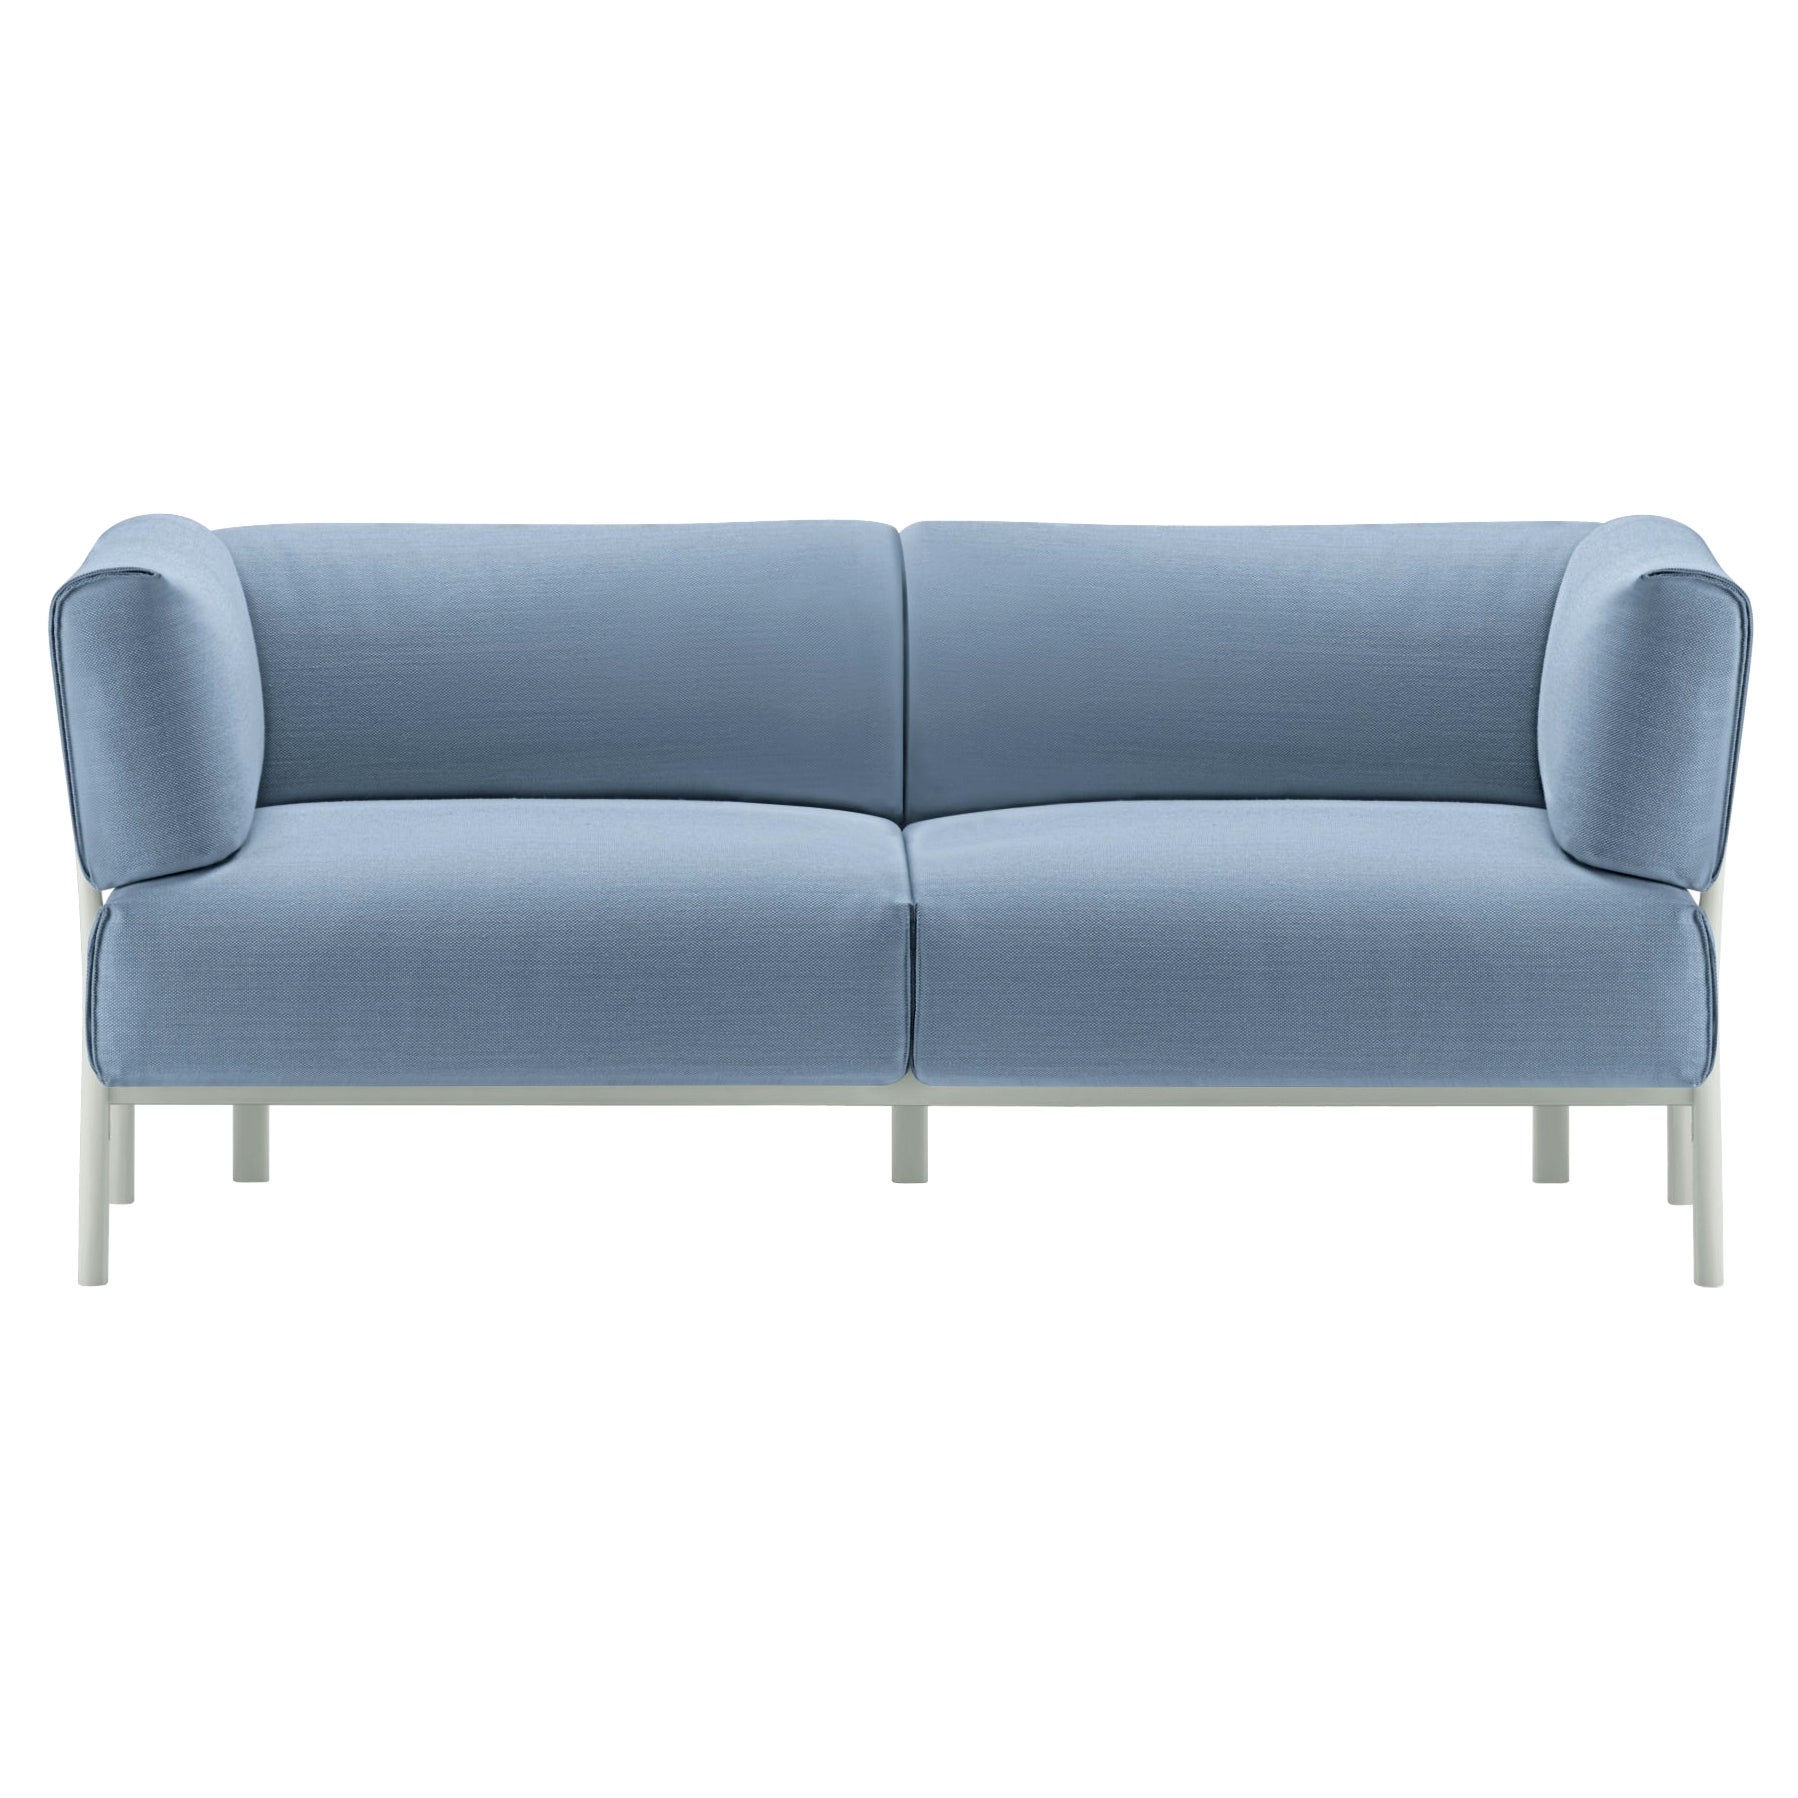 Alias 861 Eleven Sofa 2 Seater avec assise bleue et cadre en aluminium laqué blanc en vente